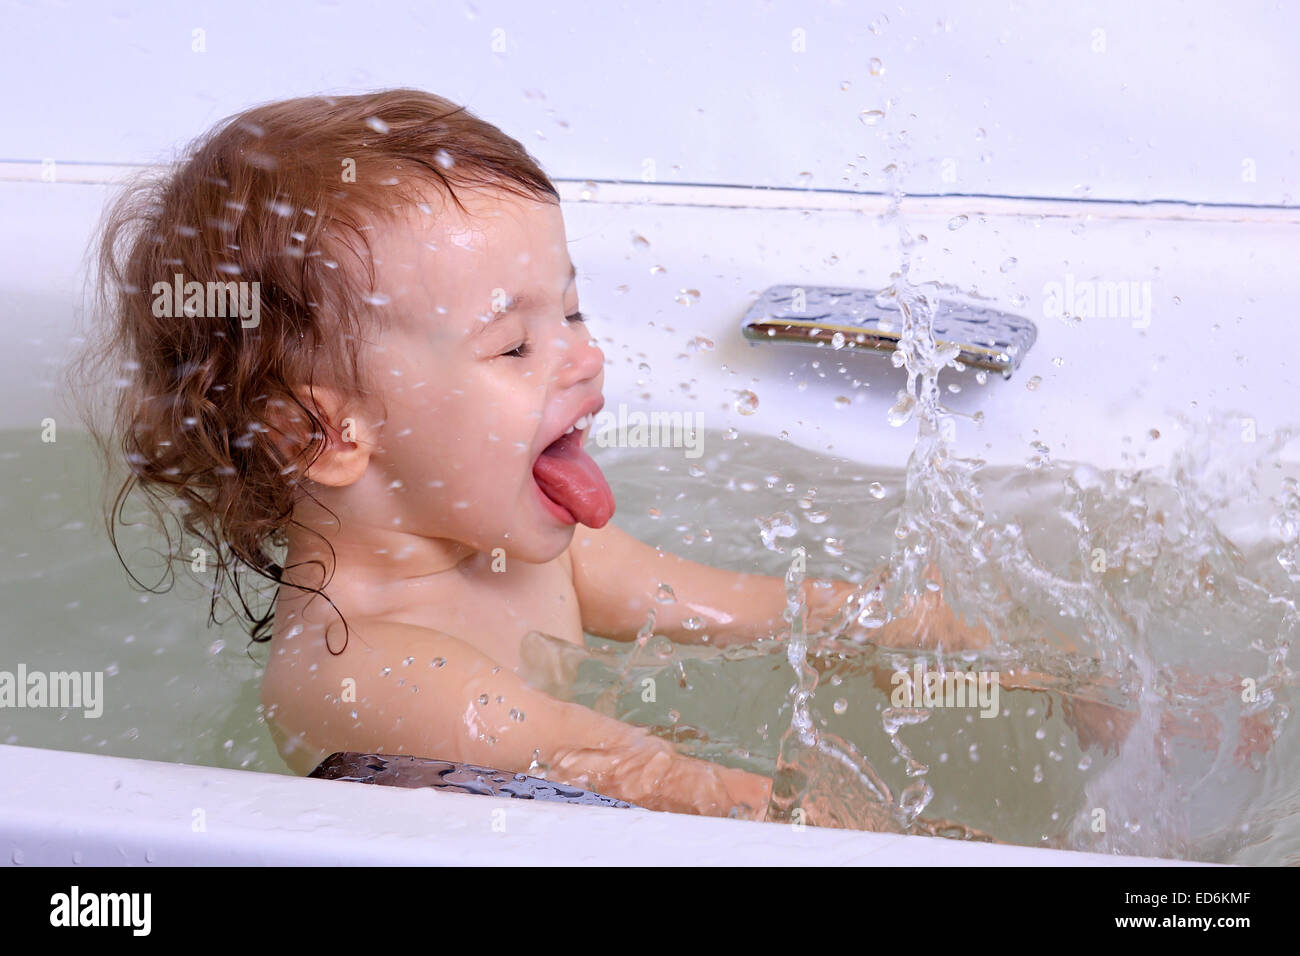 Дочка моется перед школой. Голышом дочка в ванной купается. Доченька моется. Мальчик зовет купаться фотография.